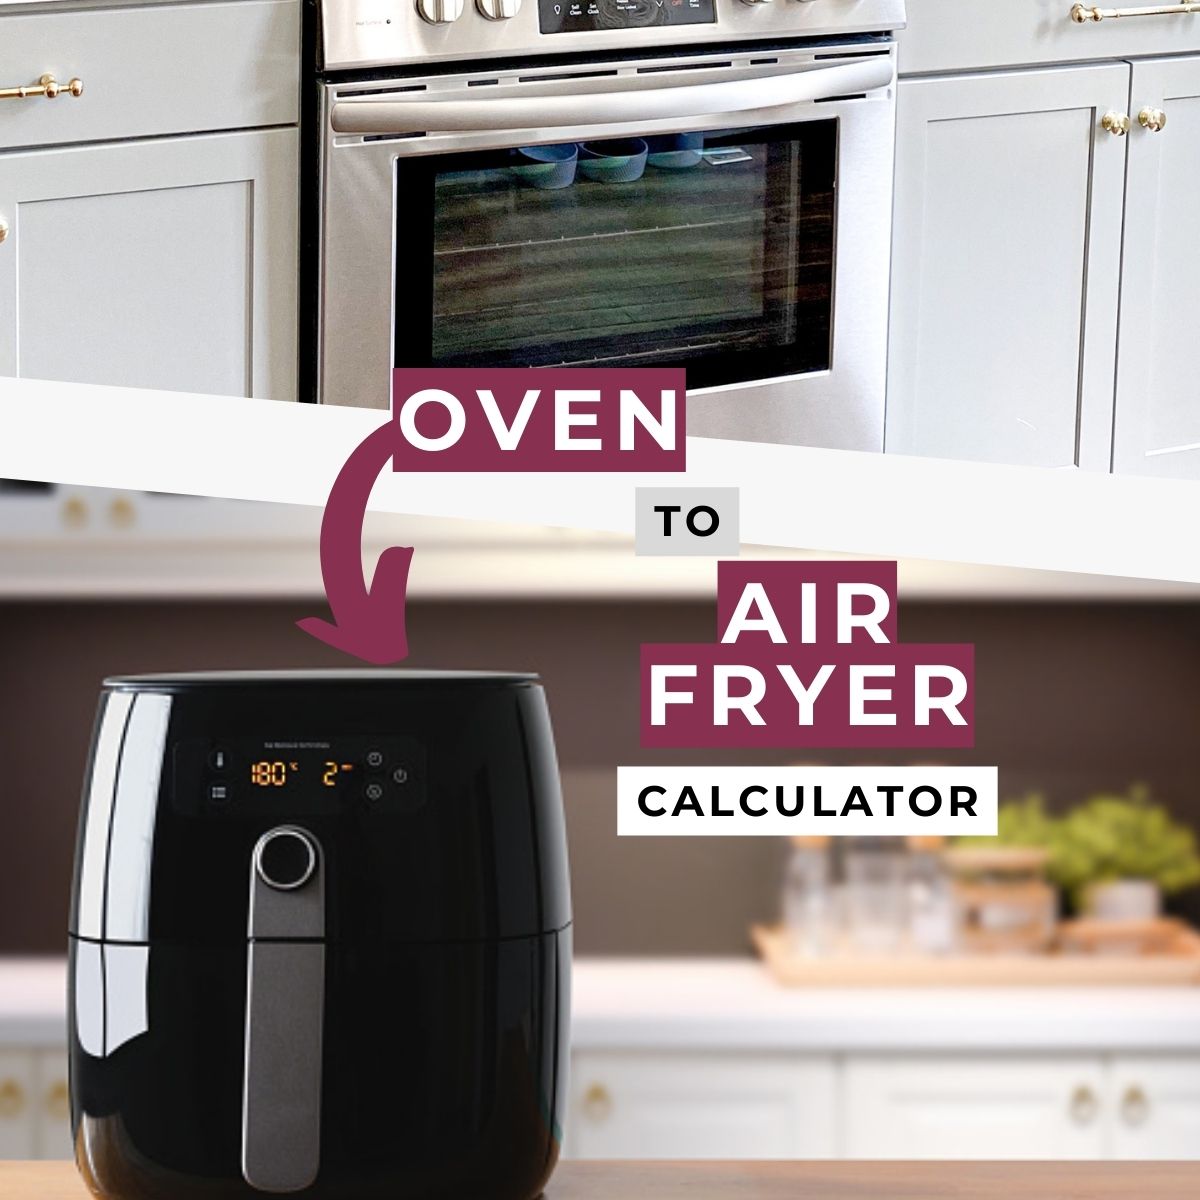 image of an oven an air fryer.